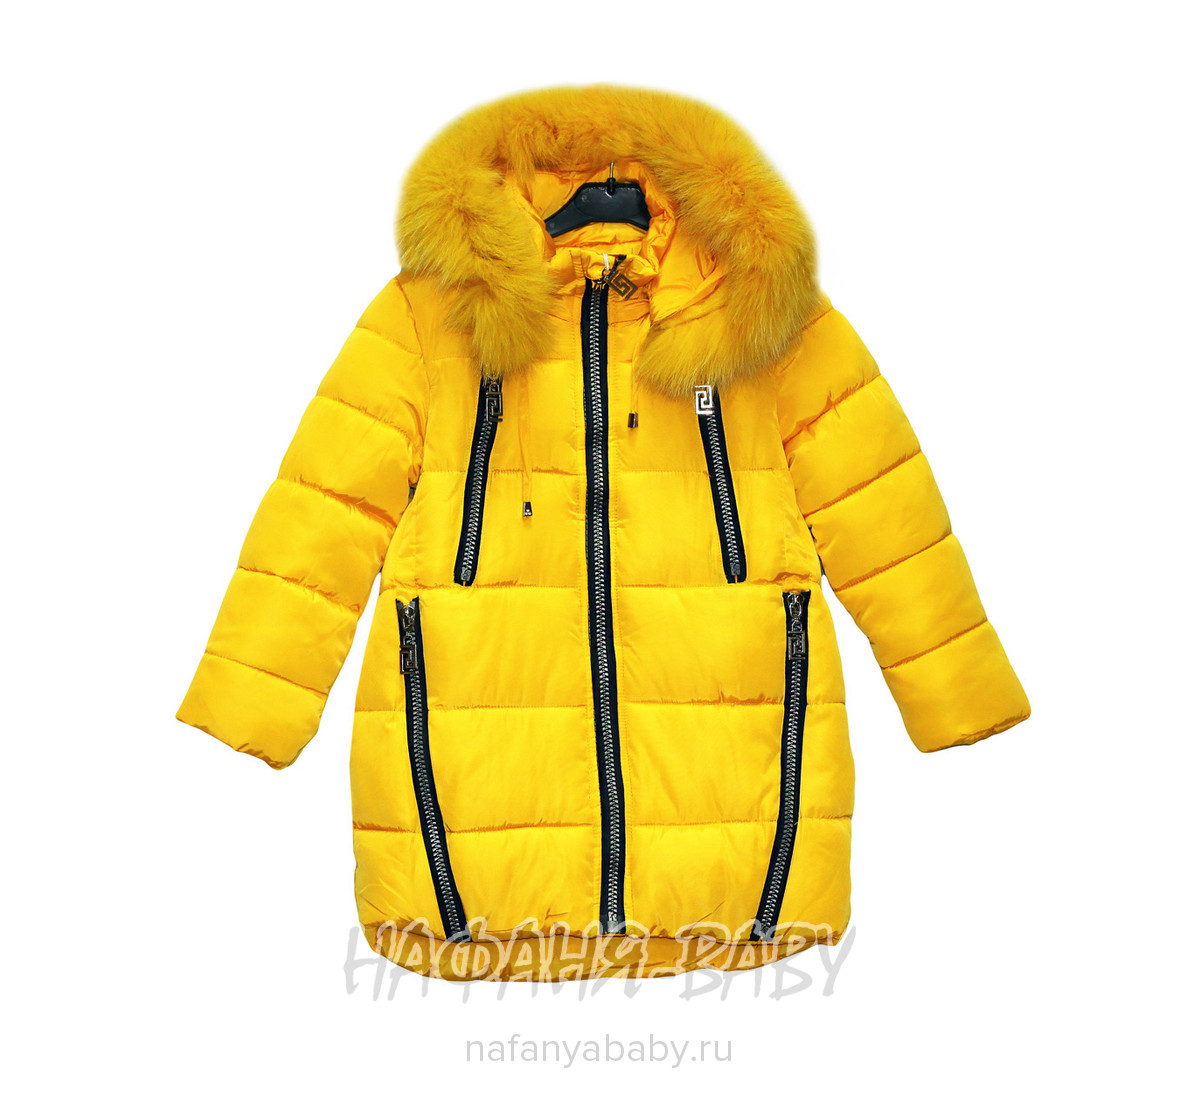 Детская зимняя куртка для девочки MARRY & ROBERT, купить в интернет магазине Нафаня. арт: 8128.